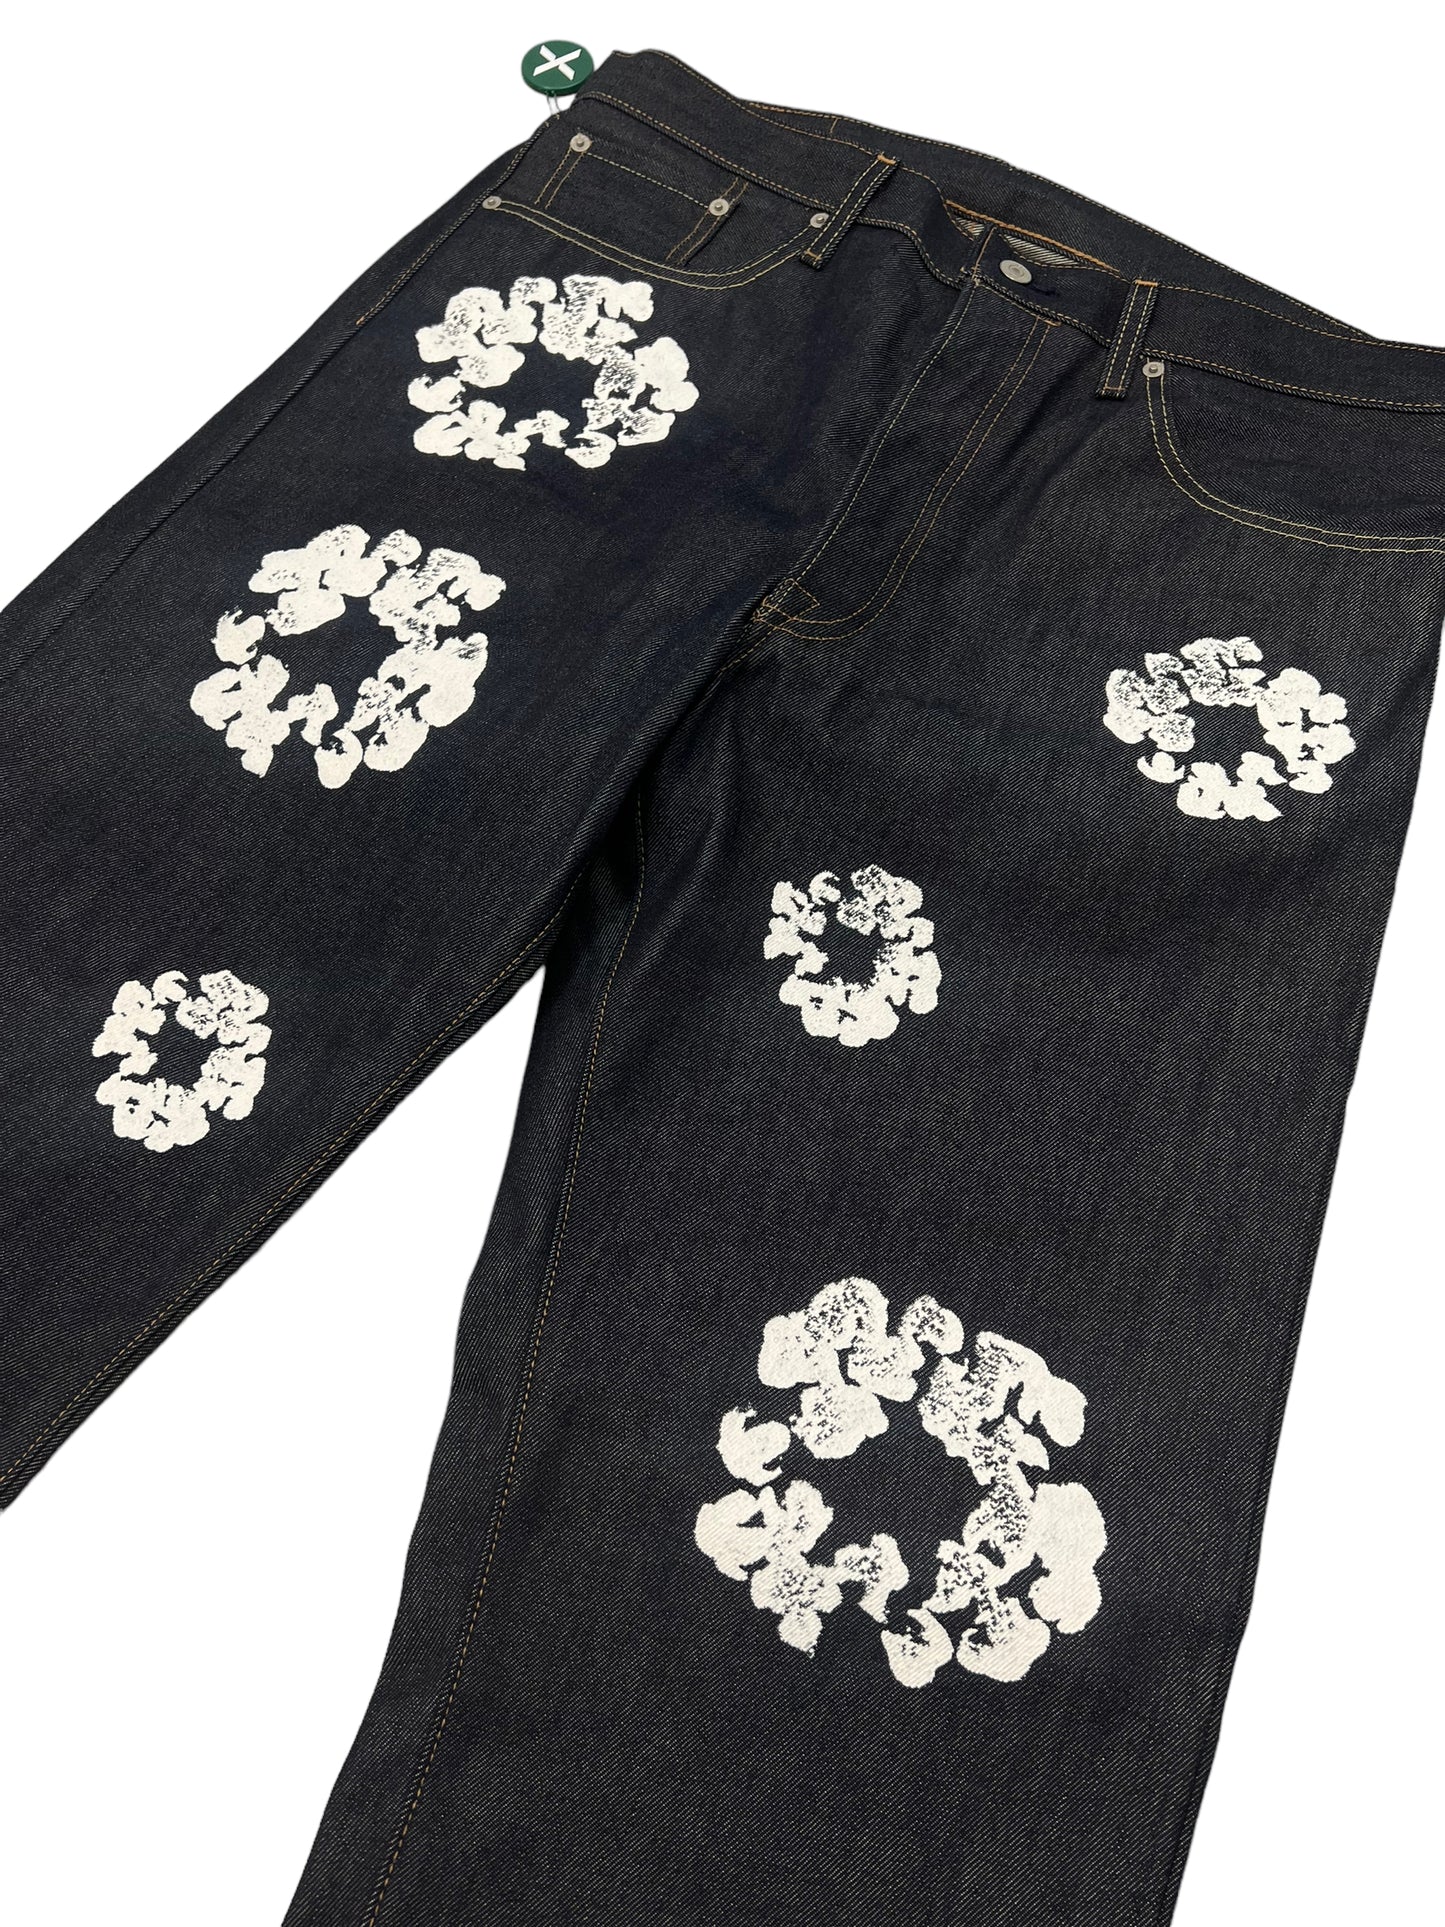 Levi's/Denim Tears Floral Jeans